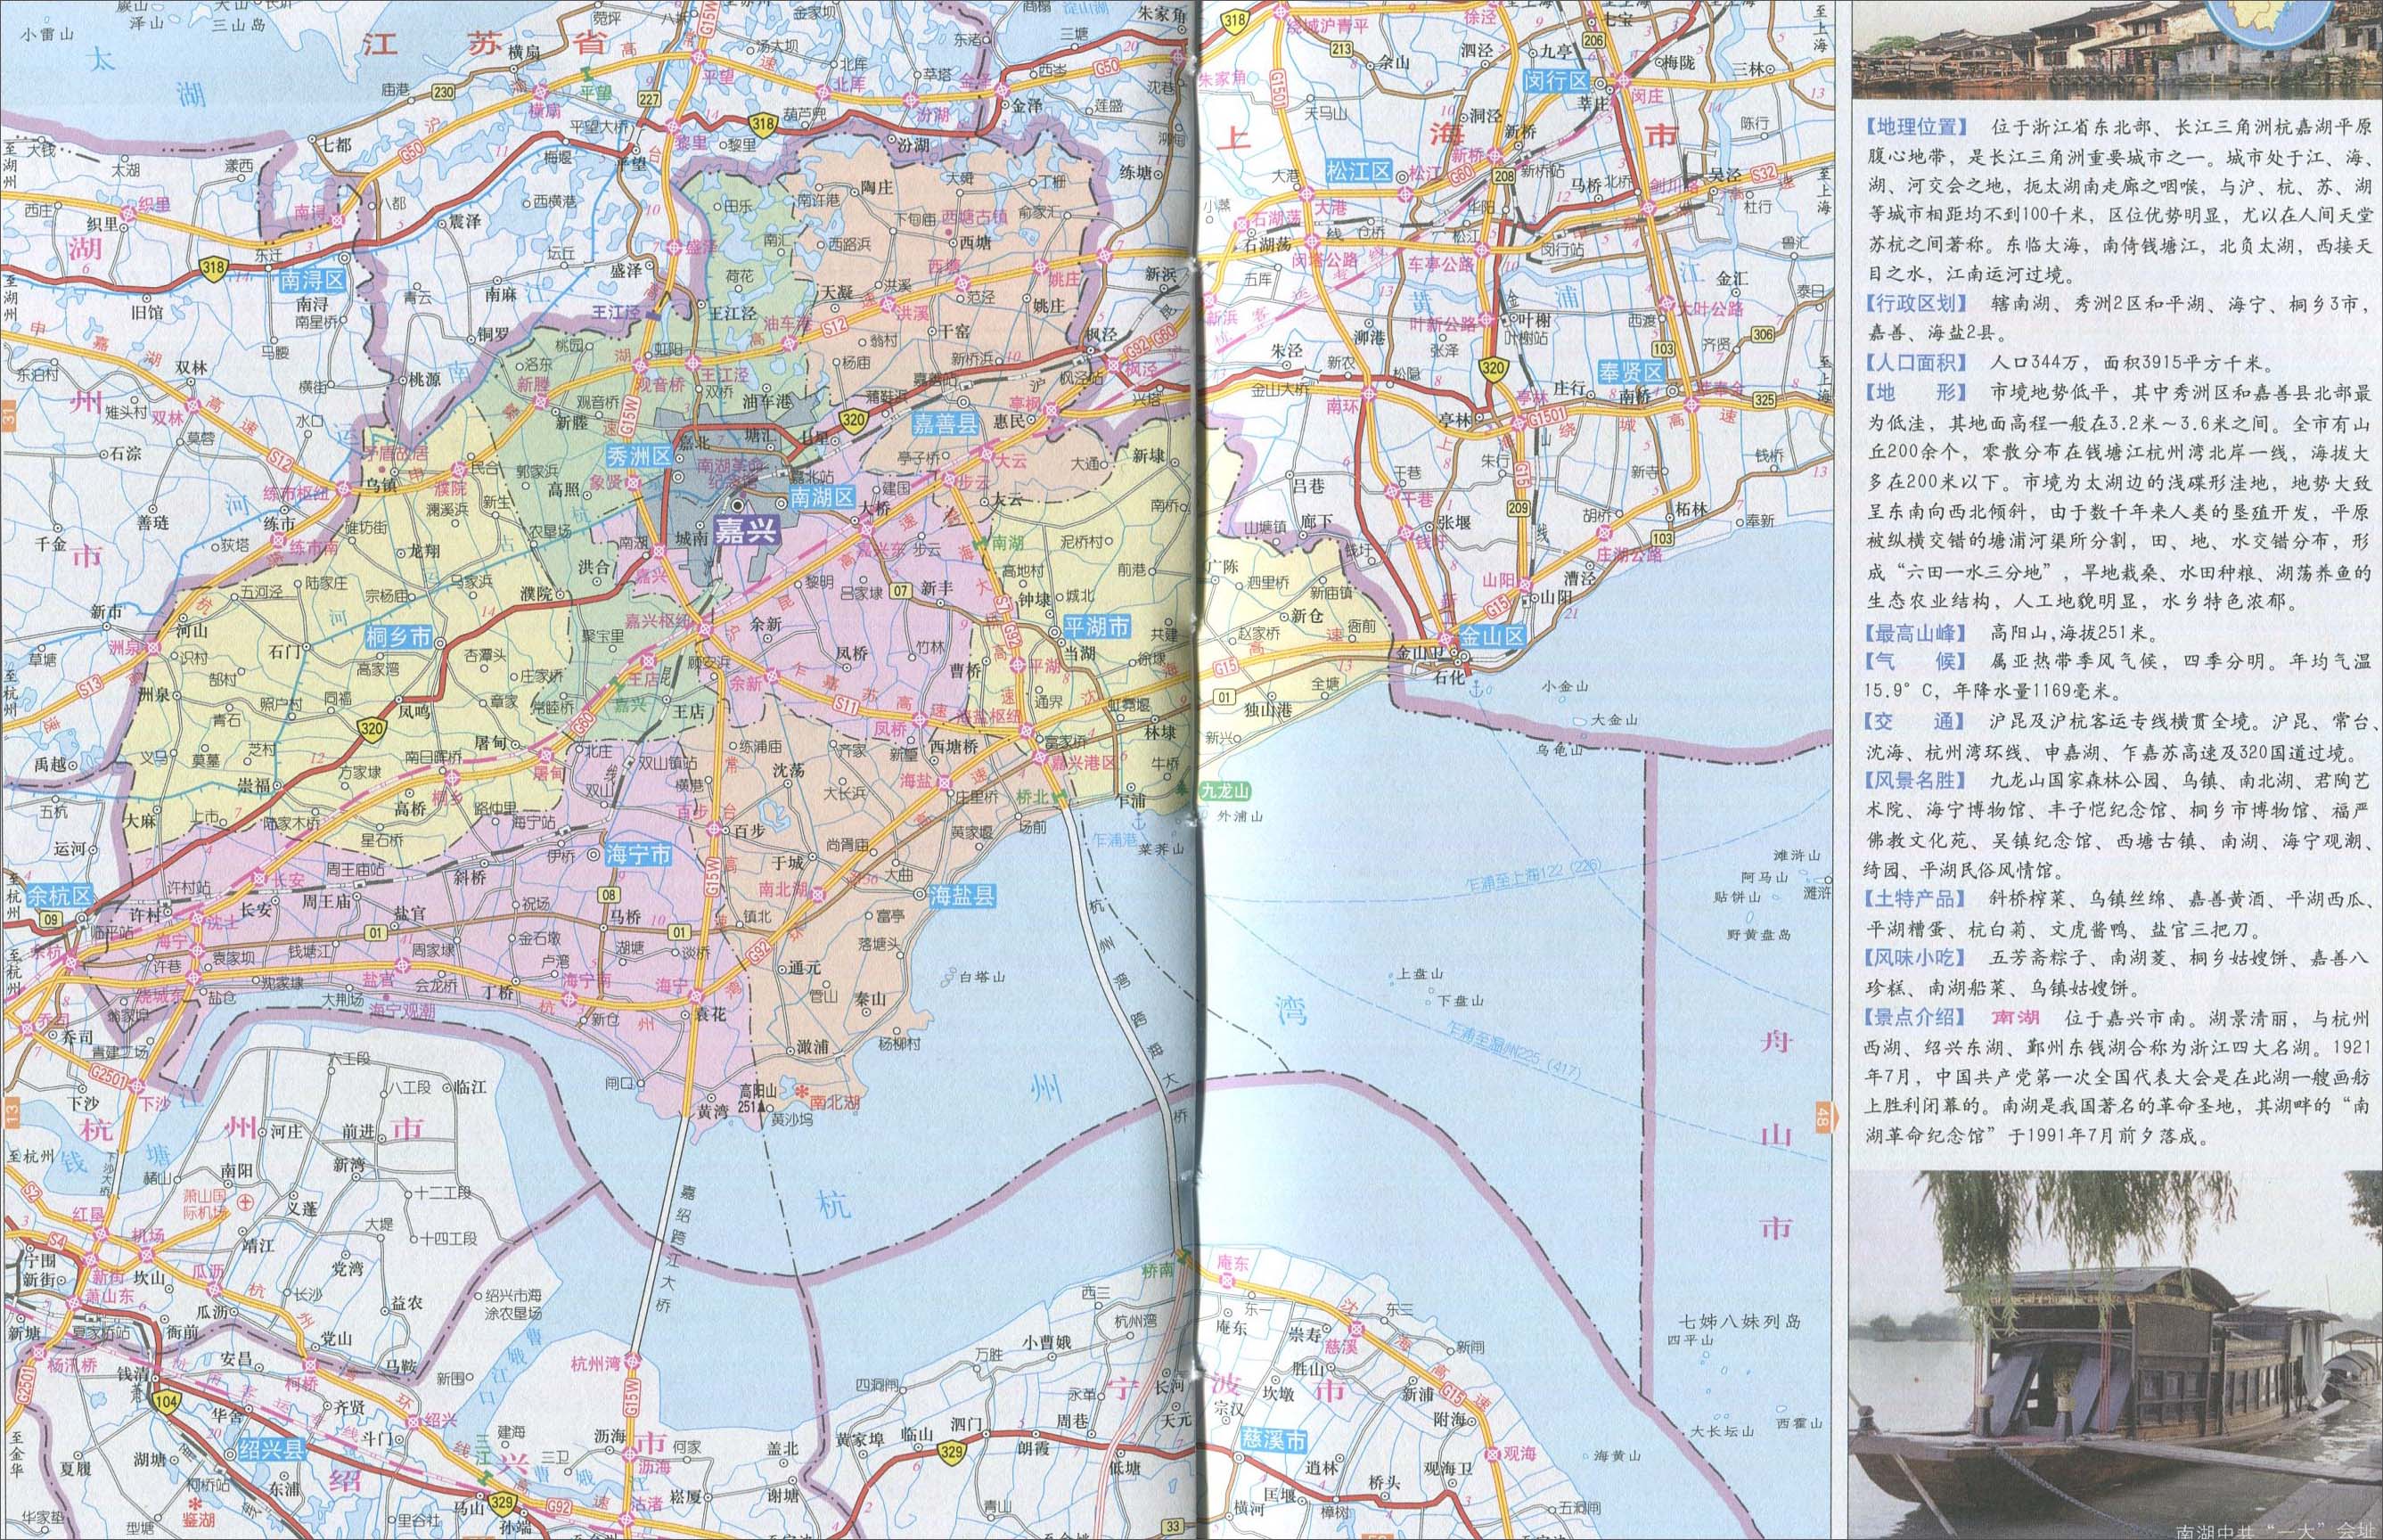 丽水市 上一幅地图: 嘉兴城区地图 | 嘉兴市 | 下一幅地图: 南湖区